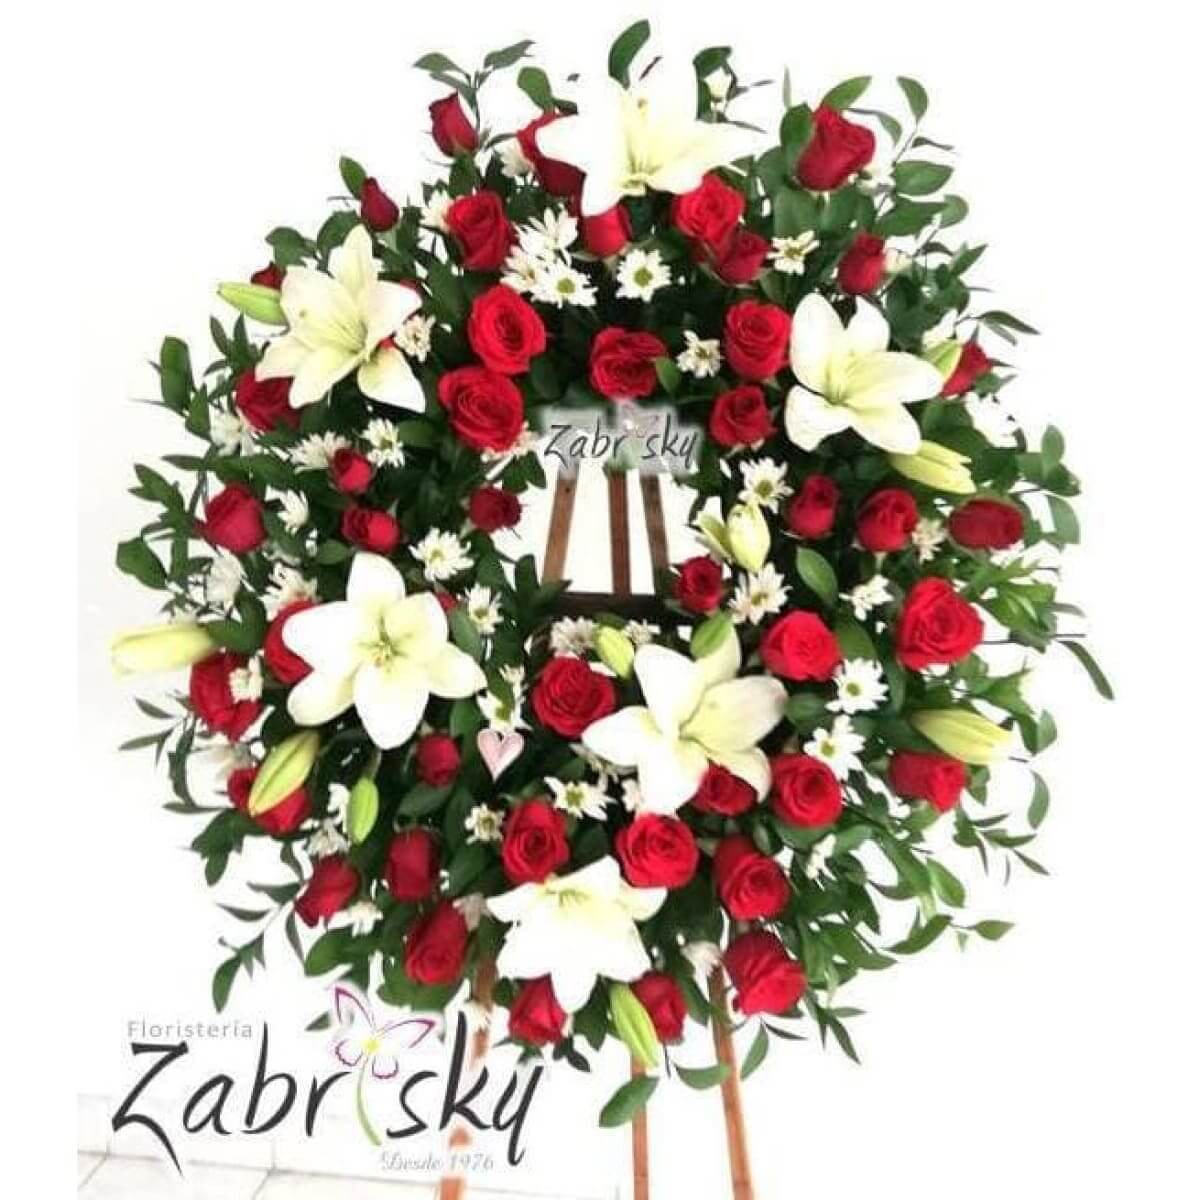 Renacer - Corona Fúnebre - Rosas Rojas y Lirios - Floristería Zabrisky